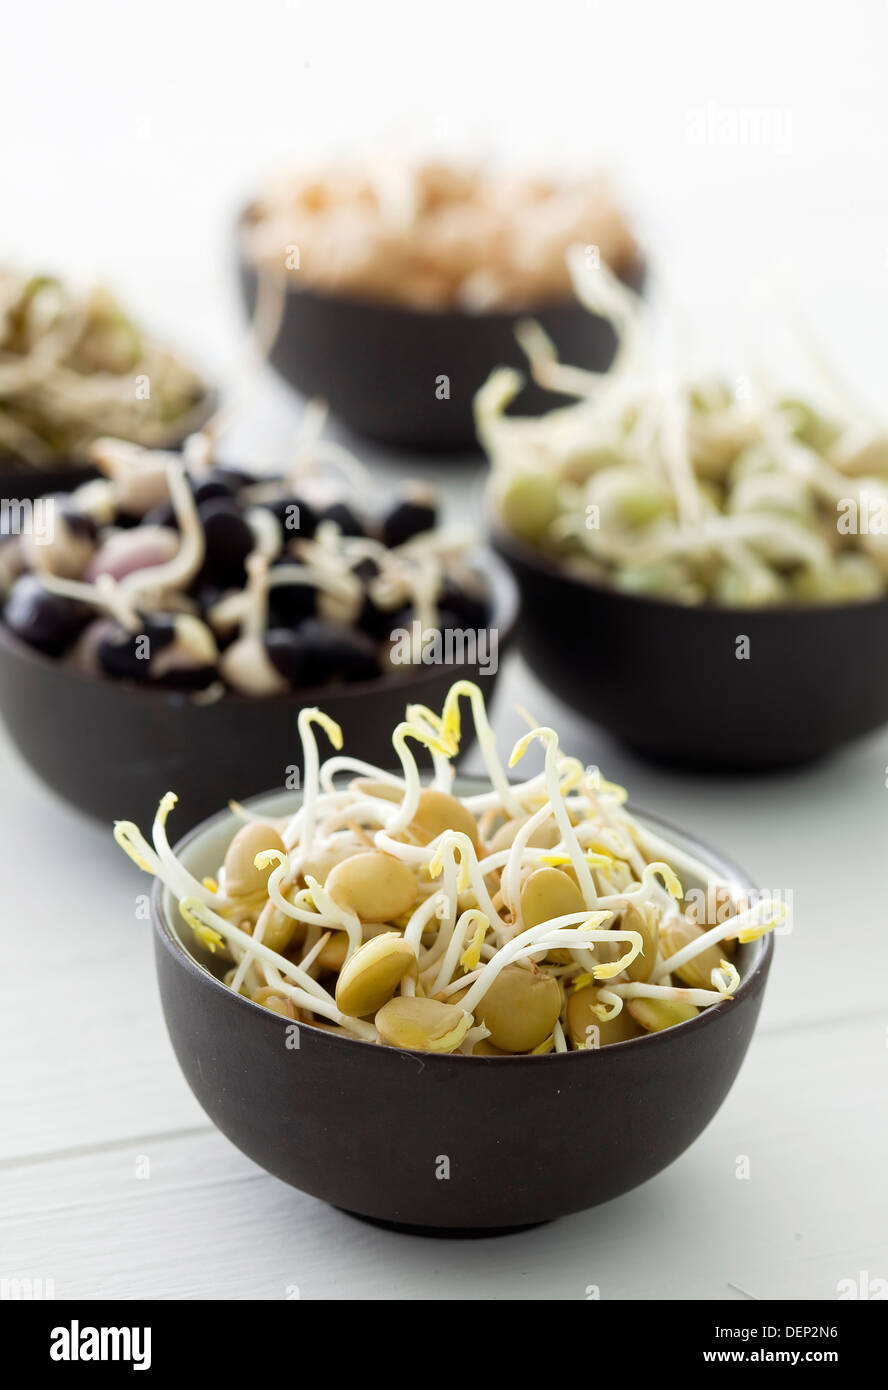 Piccole ciotole nero riempito con diversi legumi di germogliazione e impulsi; germogli di soia, piselli, fagioli e lenticchie. Foto Stock